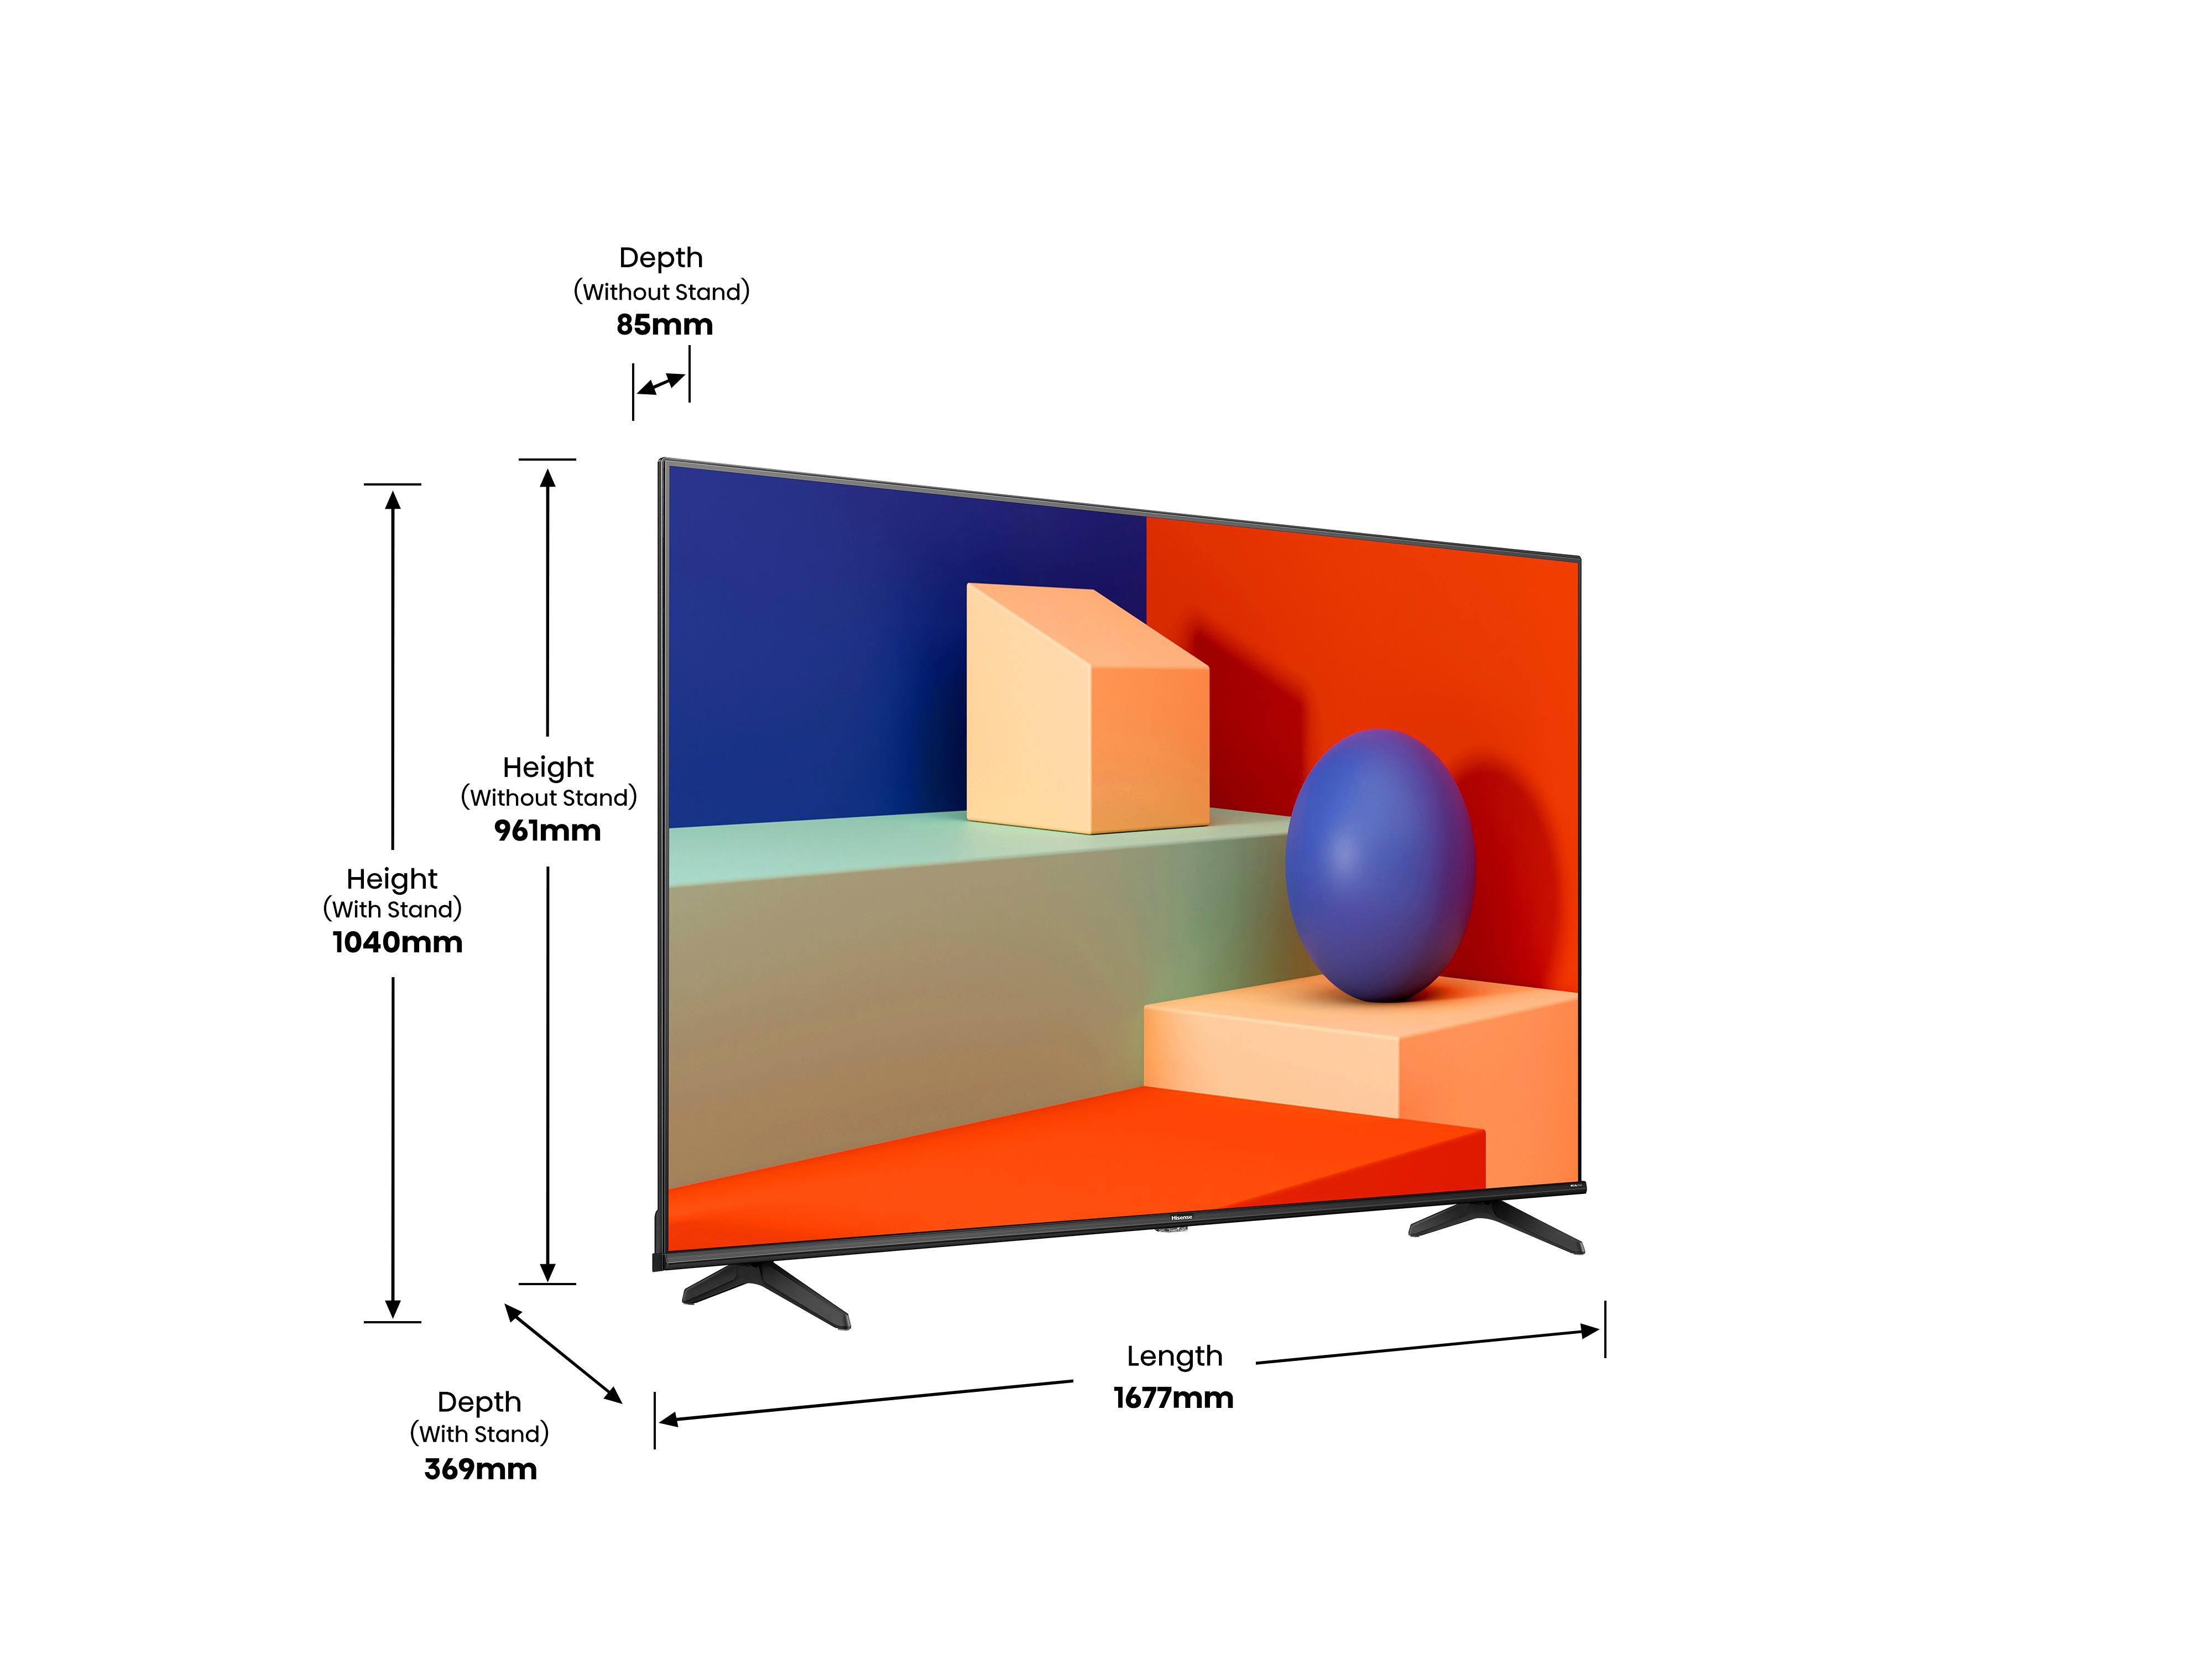 TV, HISENSE TV (Flat, 75 Zoll 189 / SMART cm, VIDAA) LED UHD 4K, 75A6K